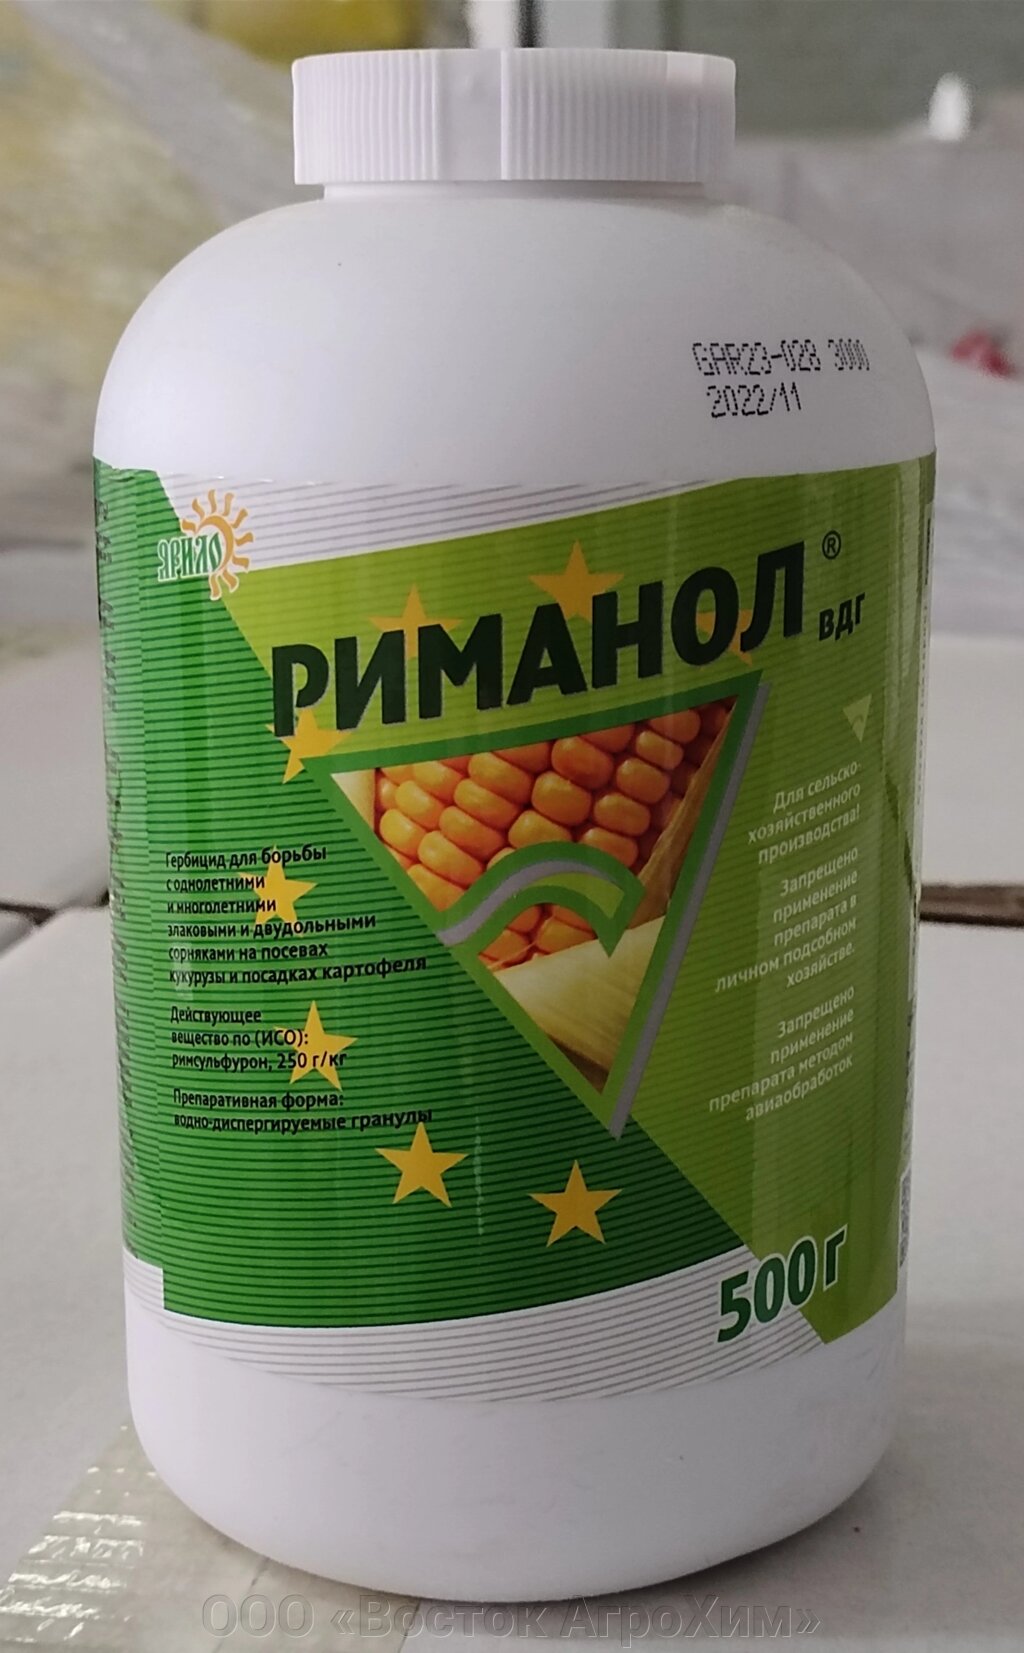 Риманол, ВДГ (250 г/кг римсульфурона) - Россия